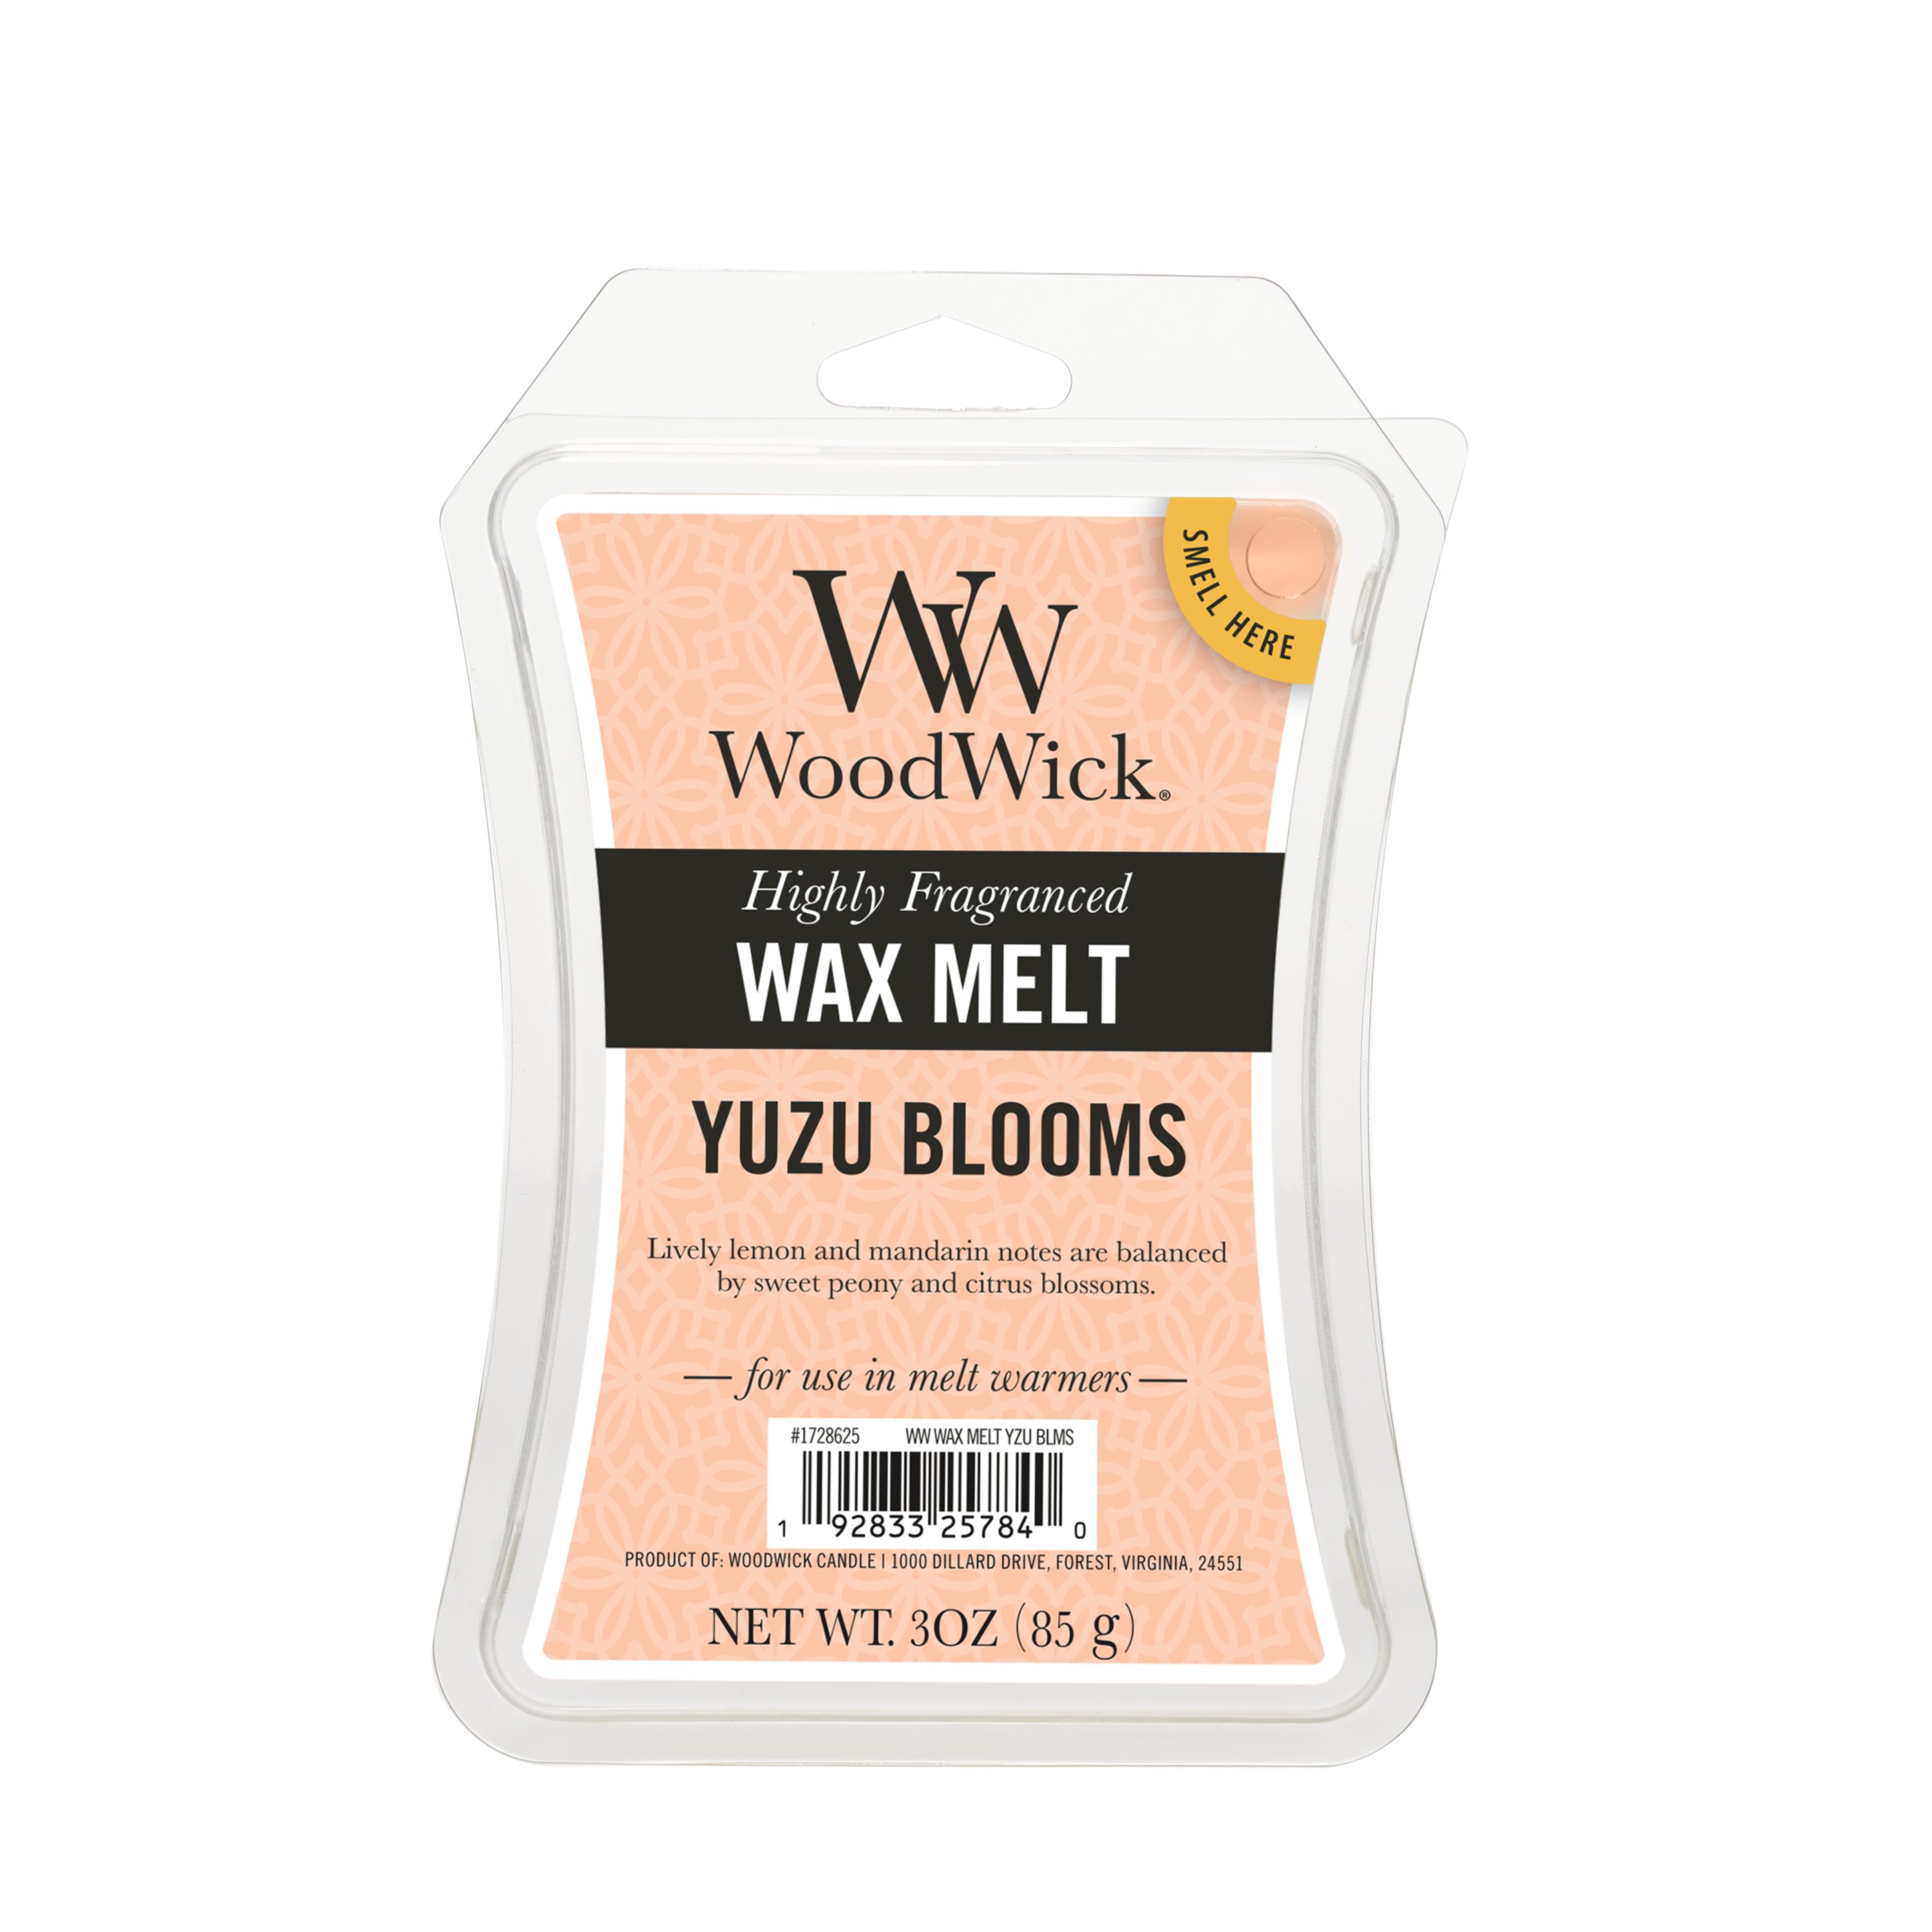 WoodWick 3 oz Wax Melt - Yuzu Blooms